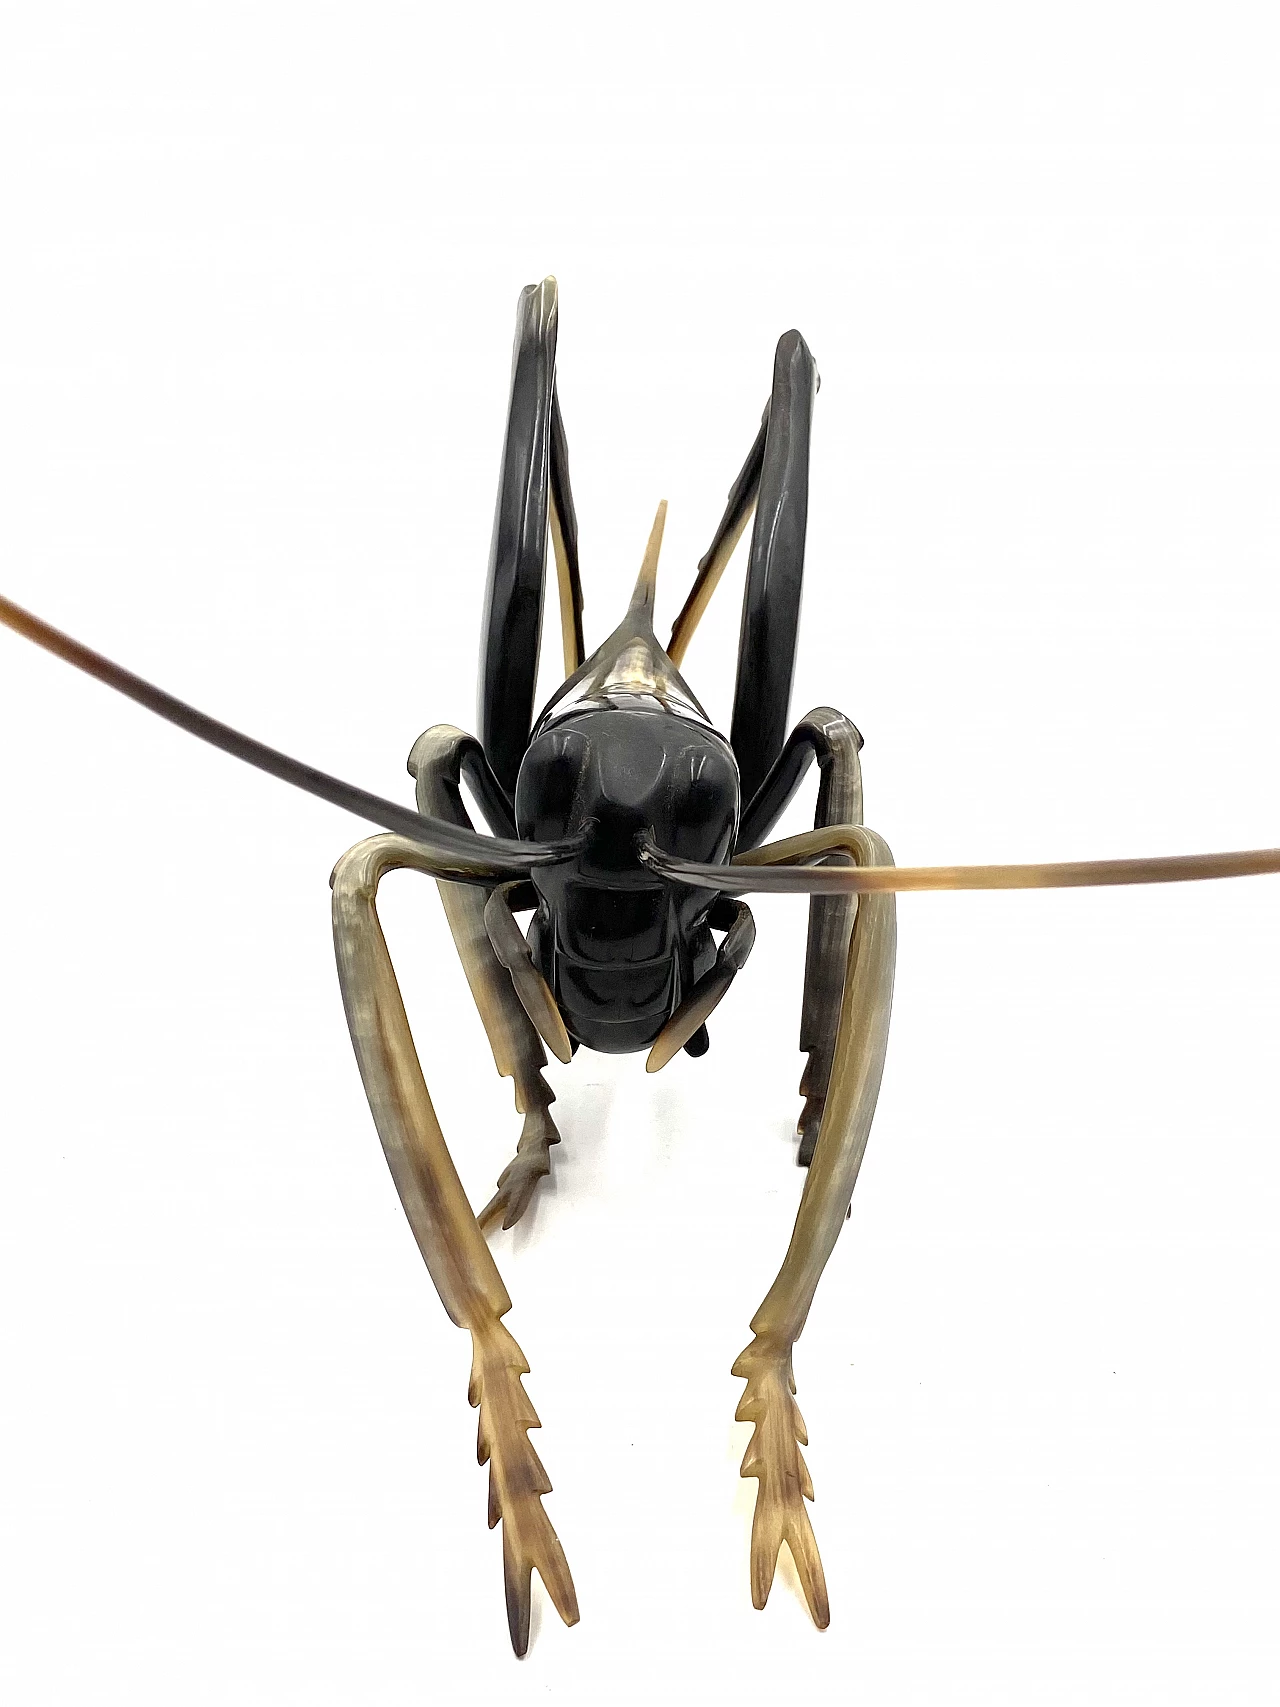 Horn grasshopper sculpture, 1960s 30